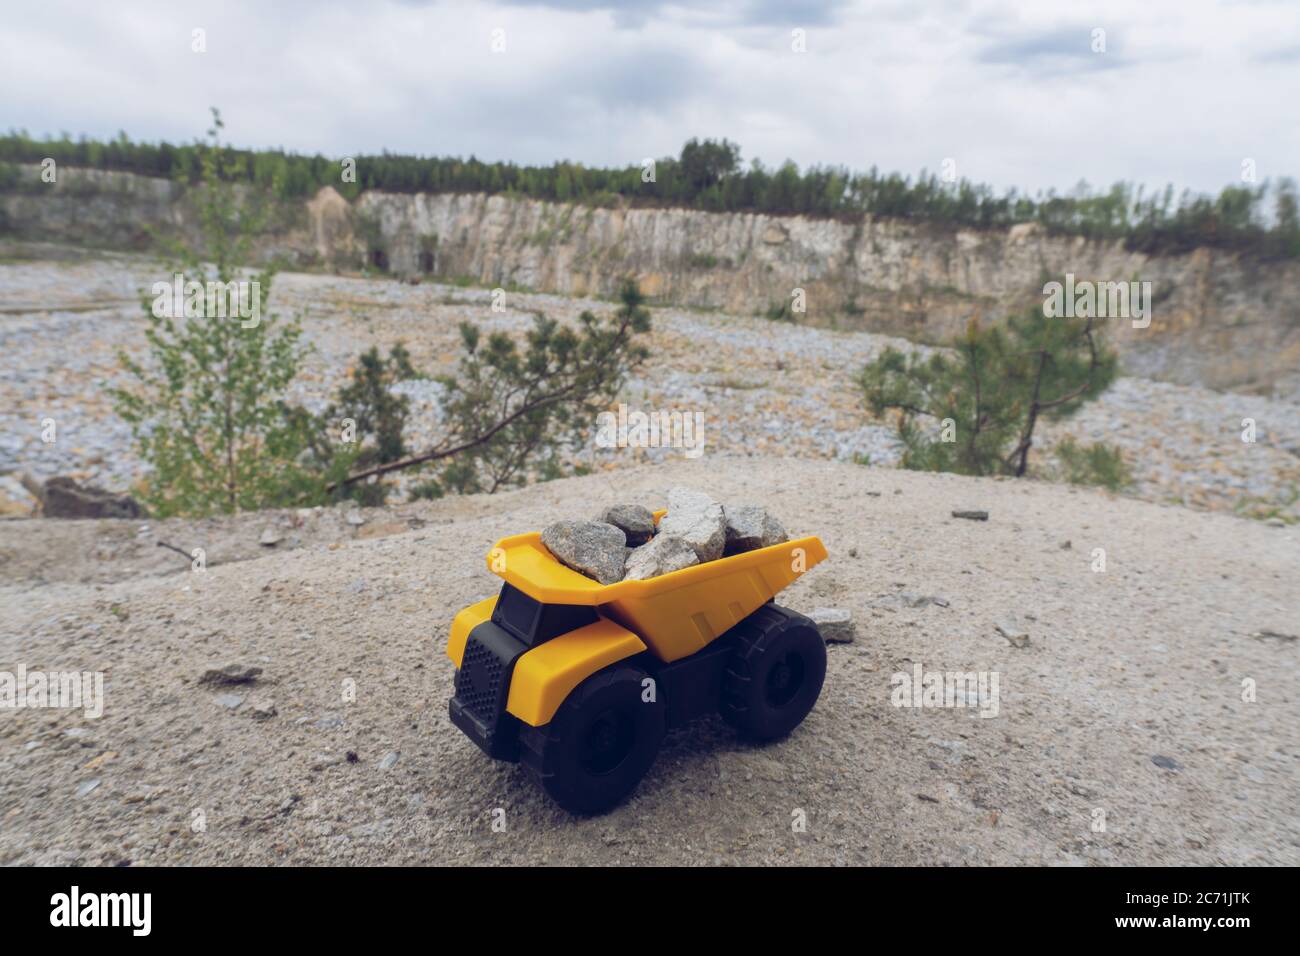 Petit jouet de voiture jaune, camion minier avec des pierres à la colline à l'arrière-plan de carrière, Banque D'Images